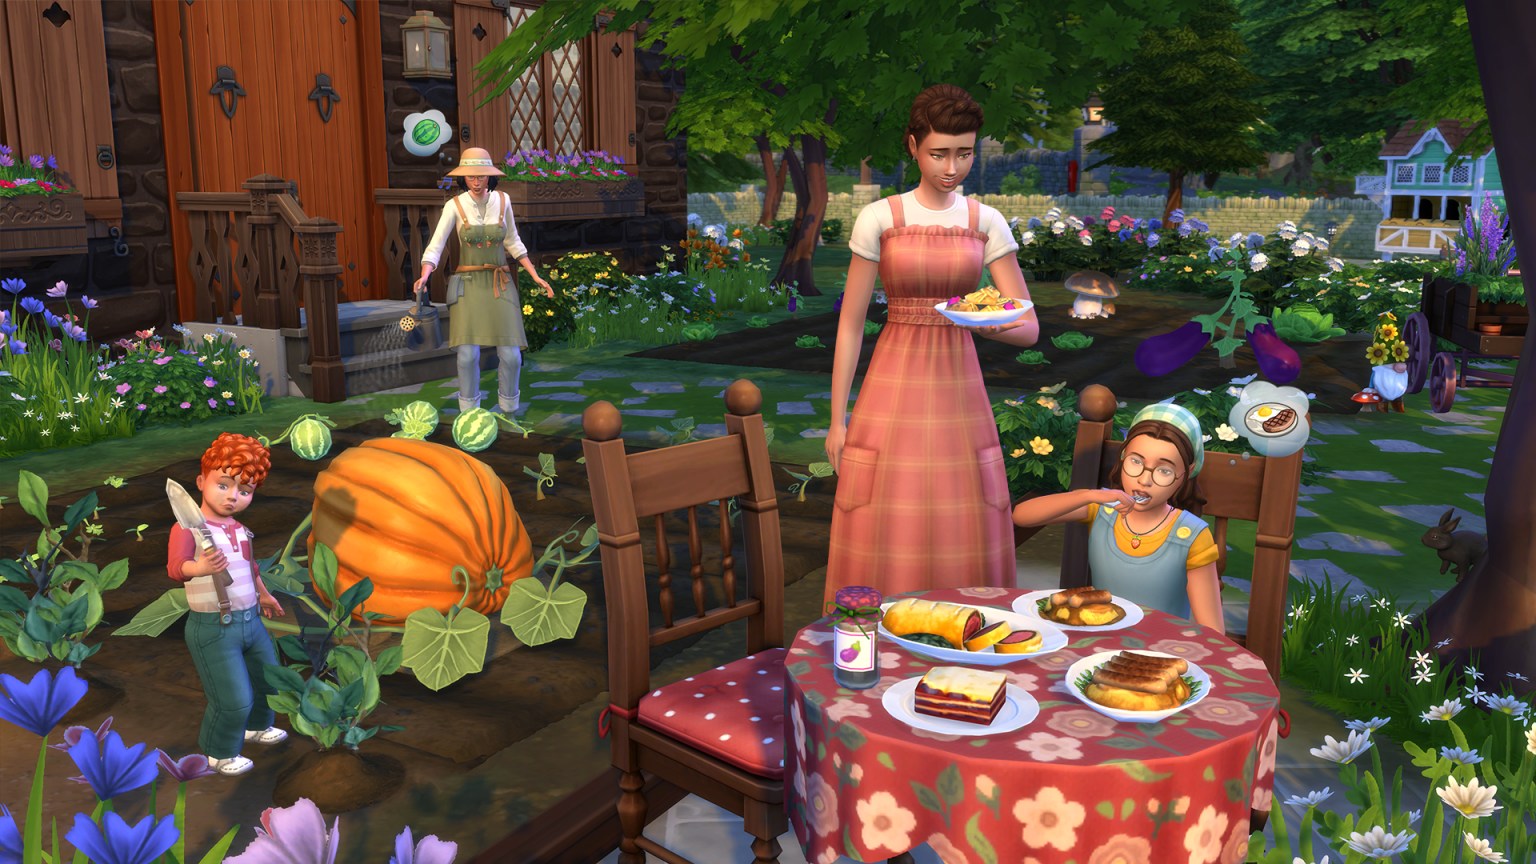 The Sims 4 Vida Campestre: Imagens Oficiais